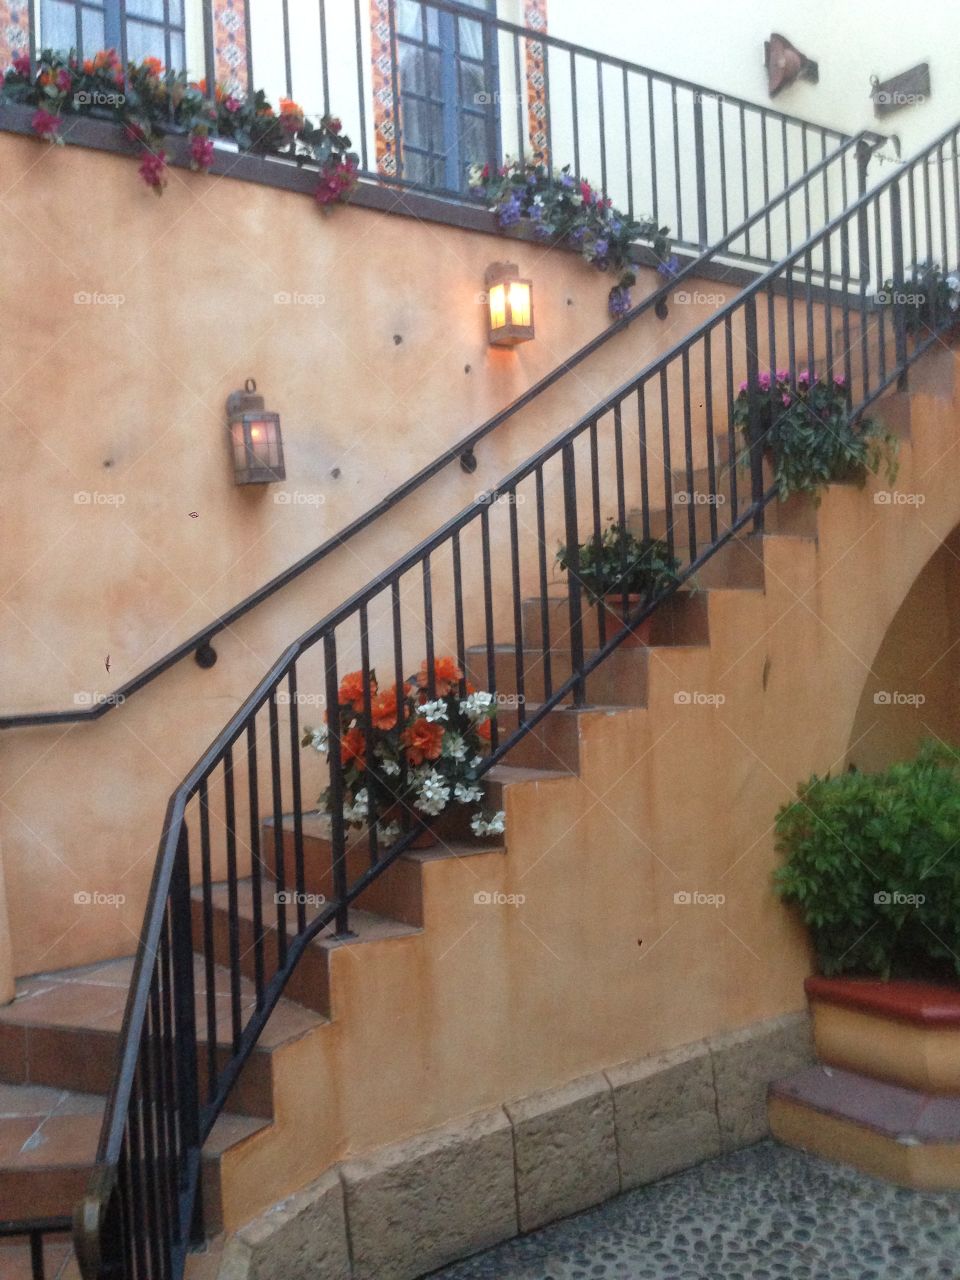 Flowered Stairway at Disney World